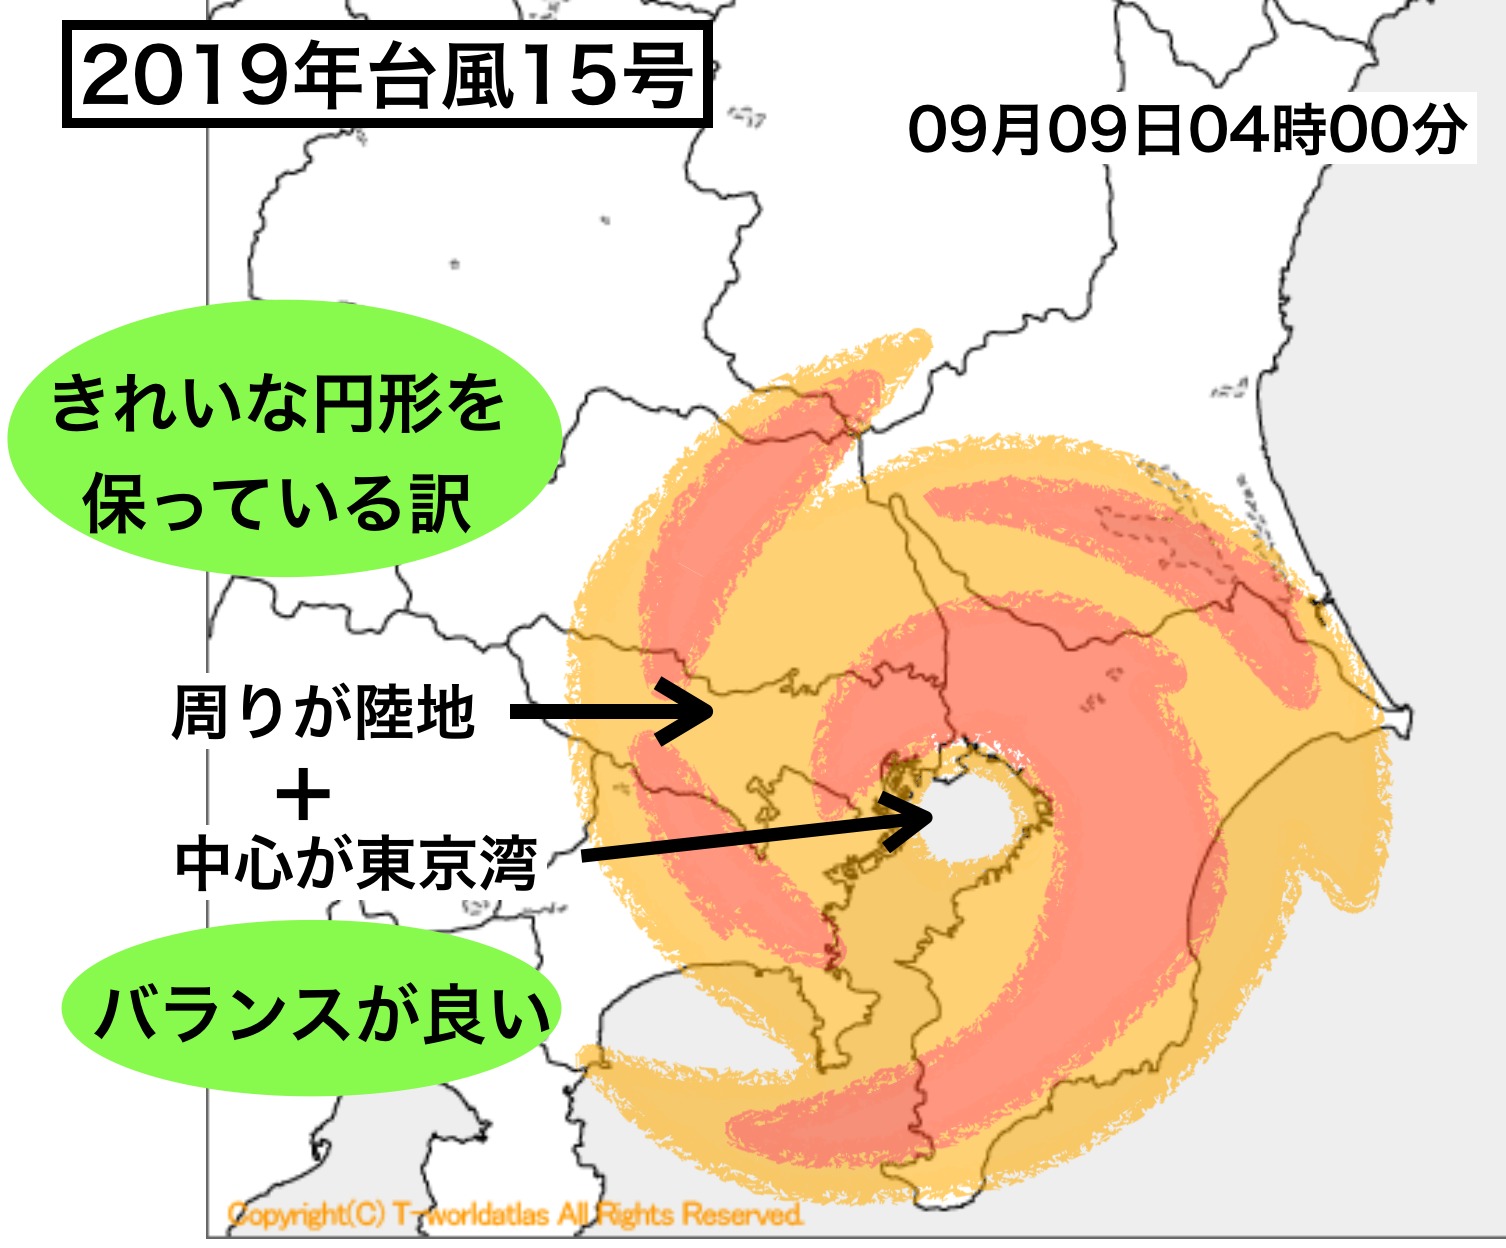 東京湾が台風を丸くした 19年台風15号２ 色と形で気象予報士